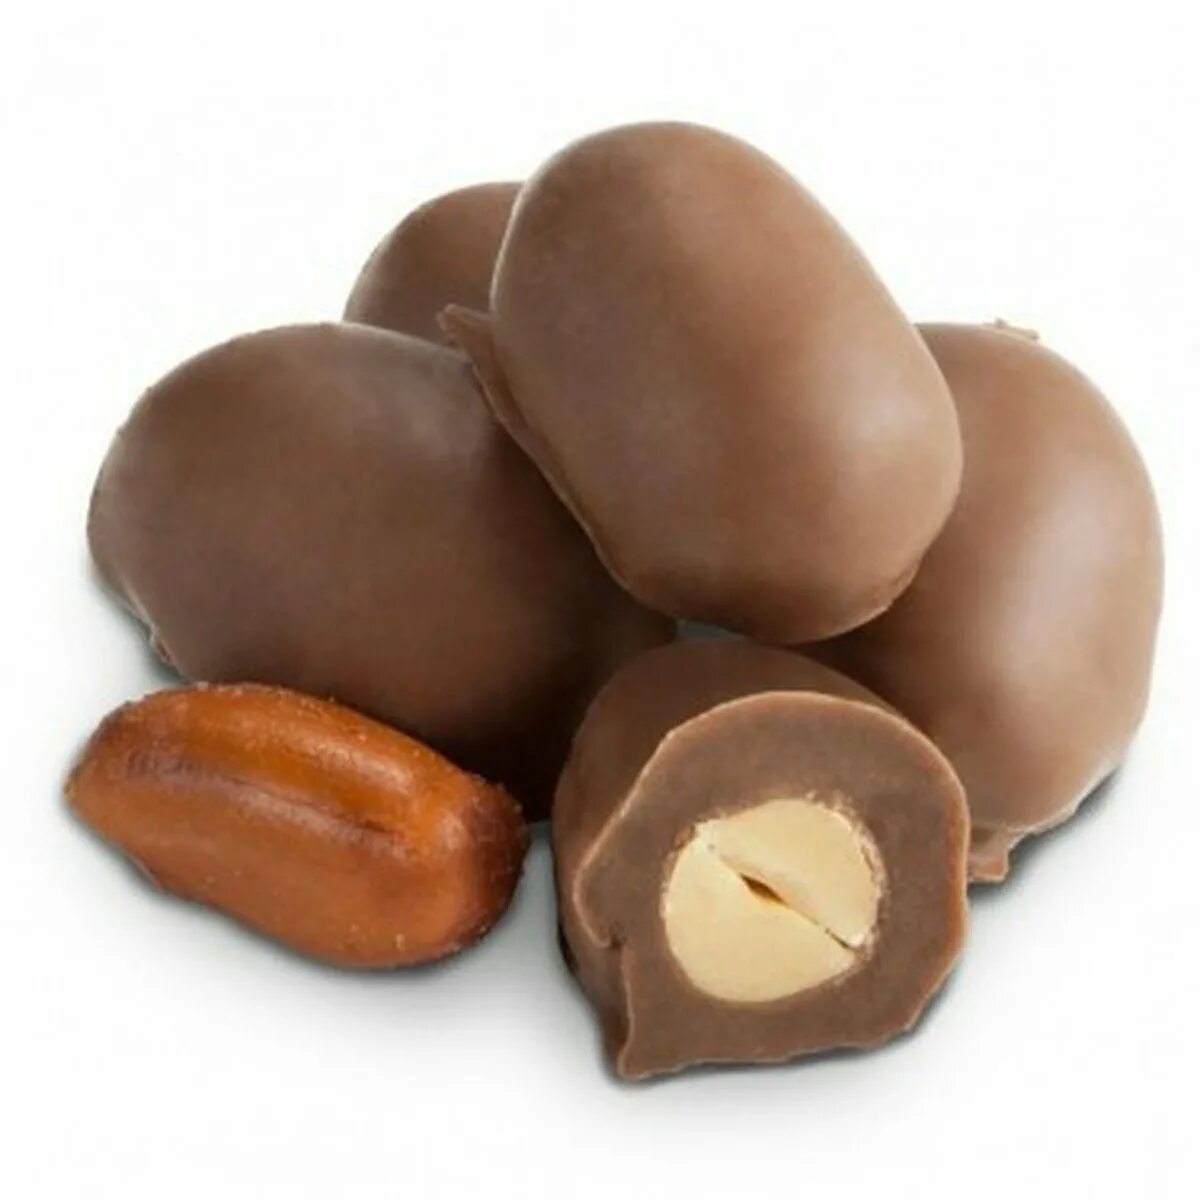 Арахис залитый шоколадом. Драже «МИЛАРИЧИ» «фундук в Молочном шоколаде» Hazelnuts. Драже арахис в шоколаде. Шоколад арахис и фундук. Шоколад с орехами.